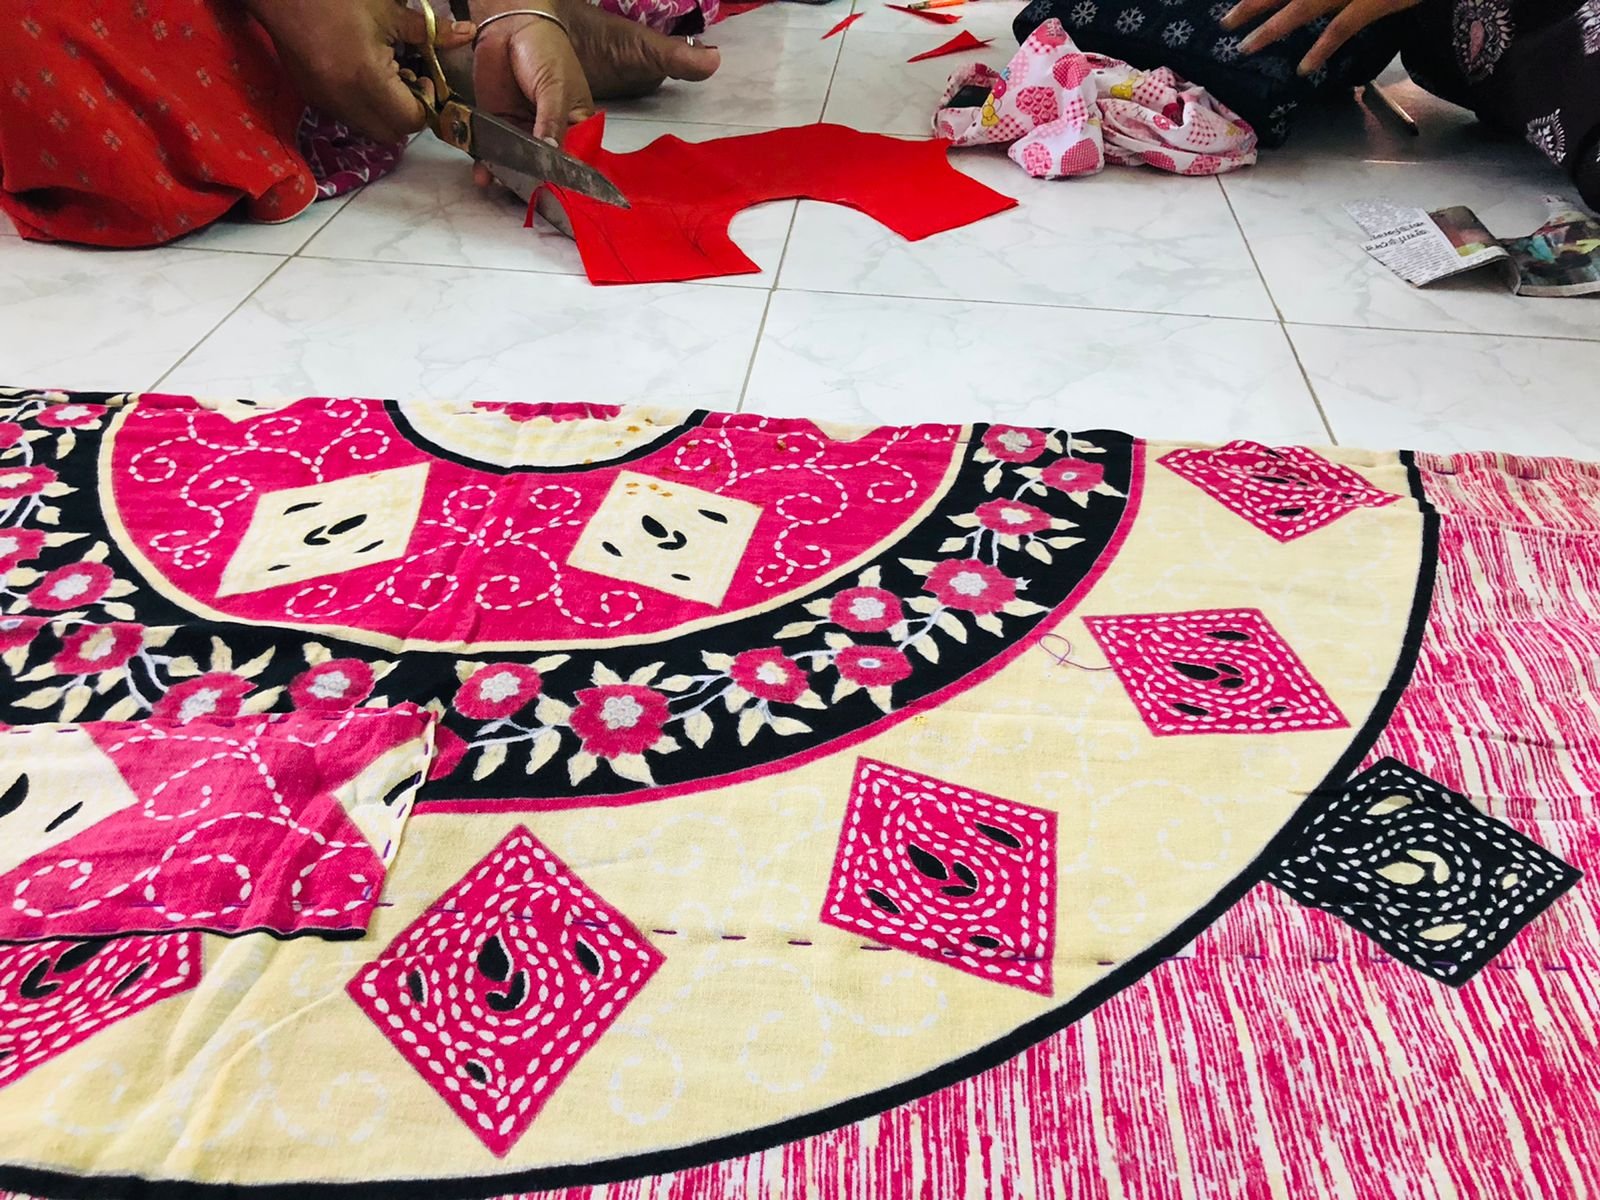 Saree blanket making-1.jpg